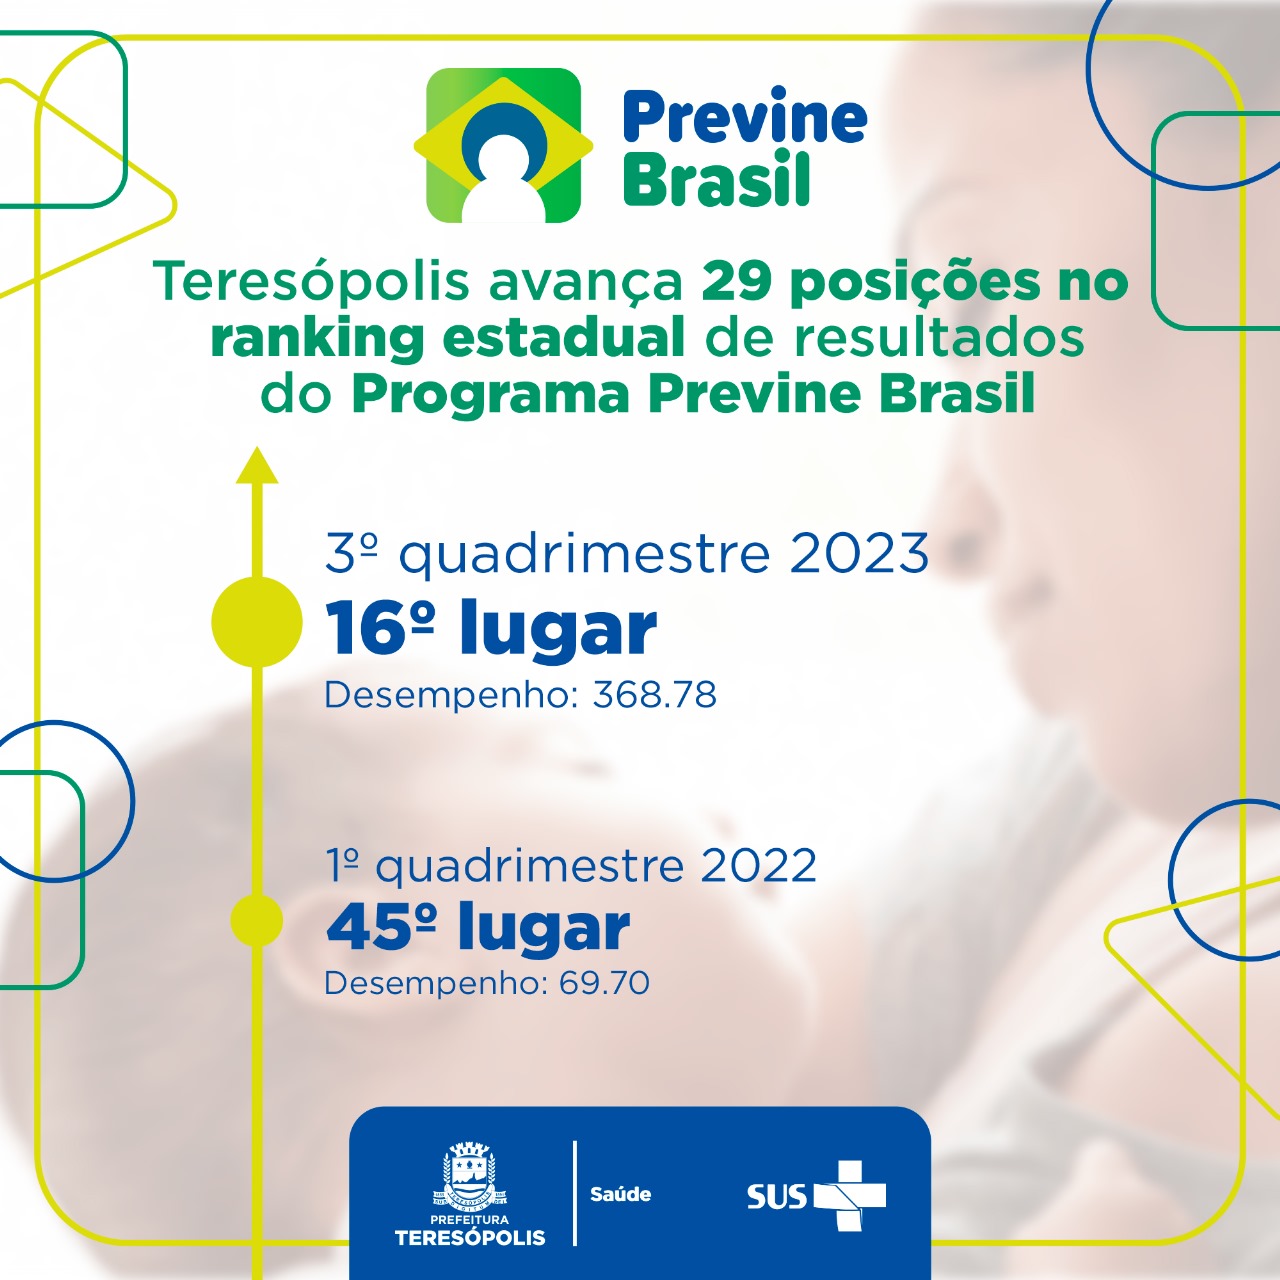 Você está visualizando atualmente Previne Brasil: Teresópolis avança 29 posições no ranking estadual de resultados do programa.